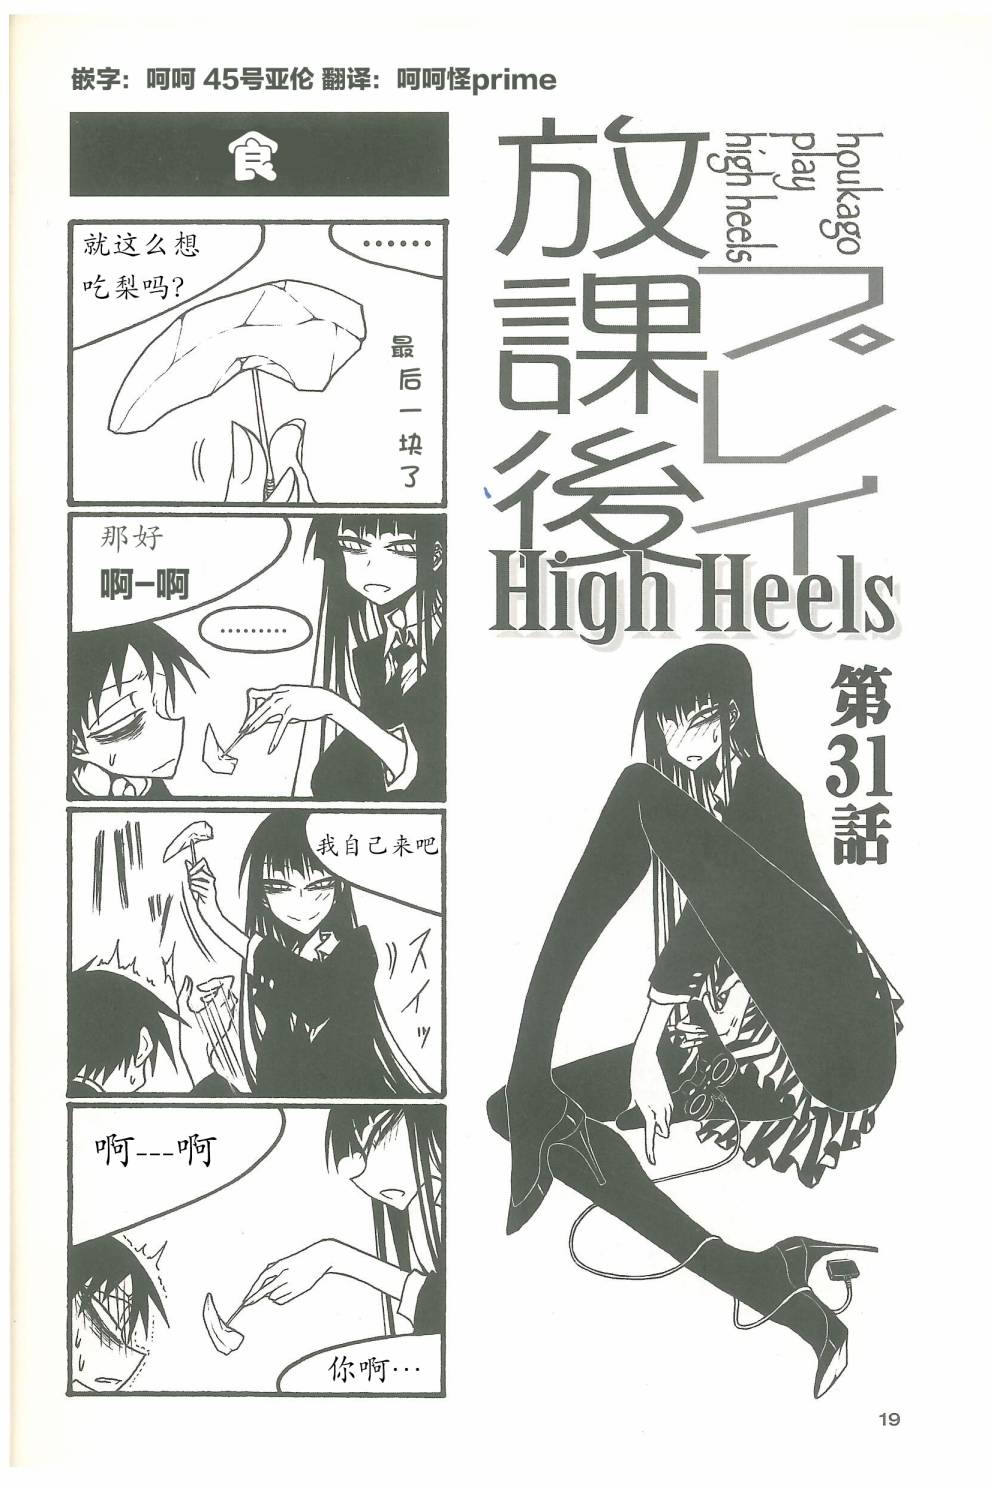 放課後play - 放課後play high heels3 03話 - 1